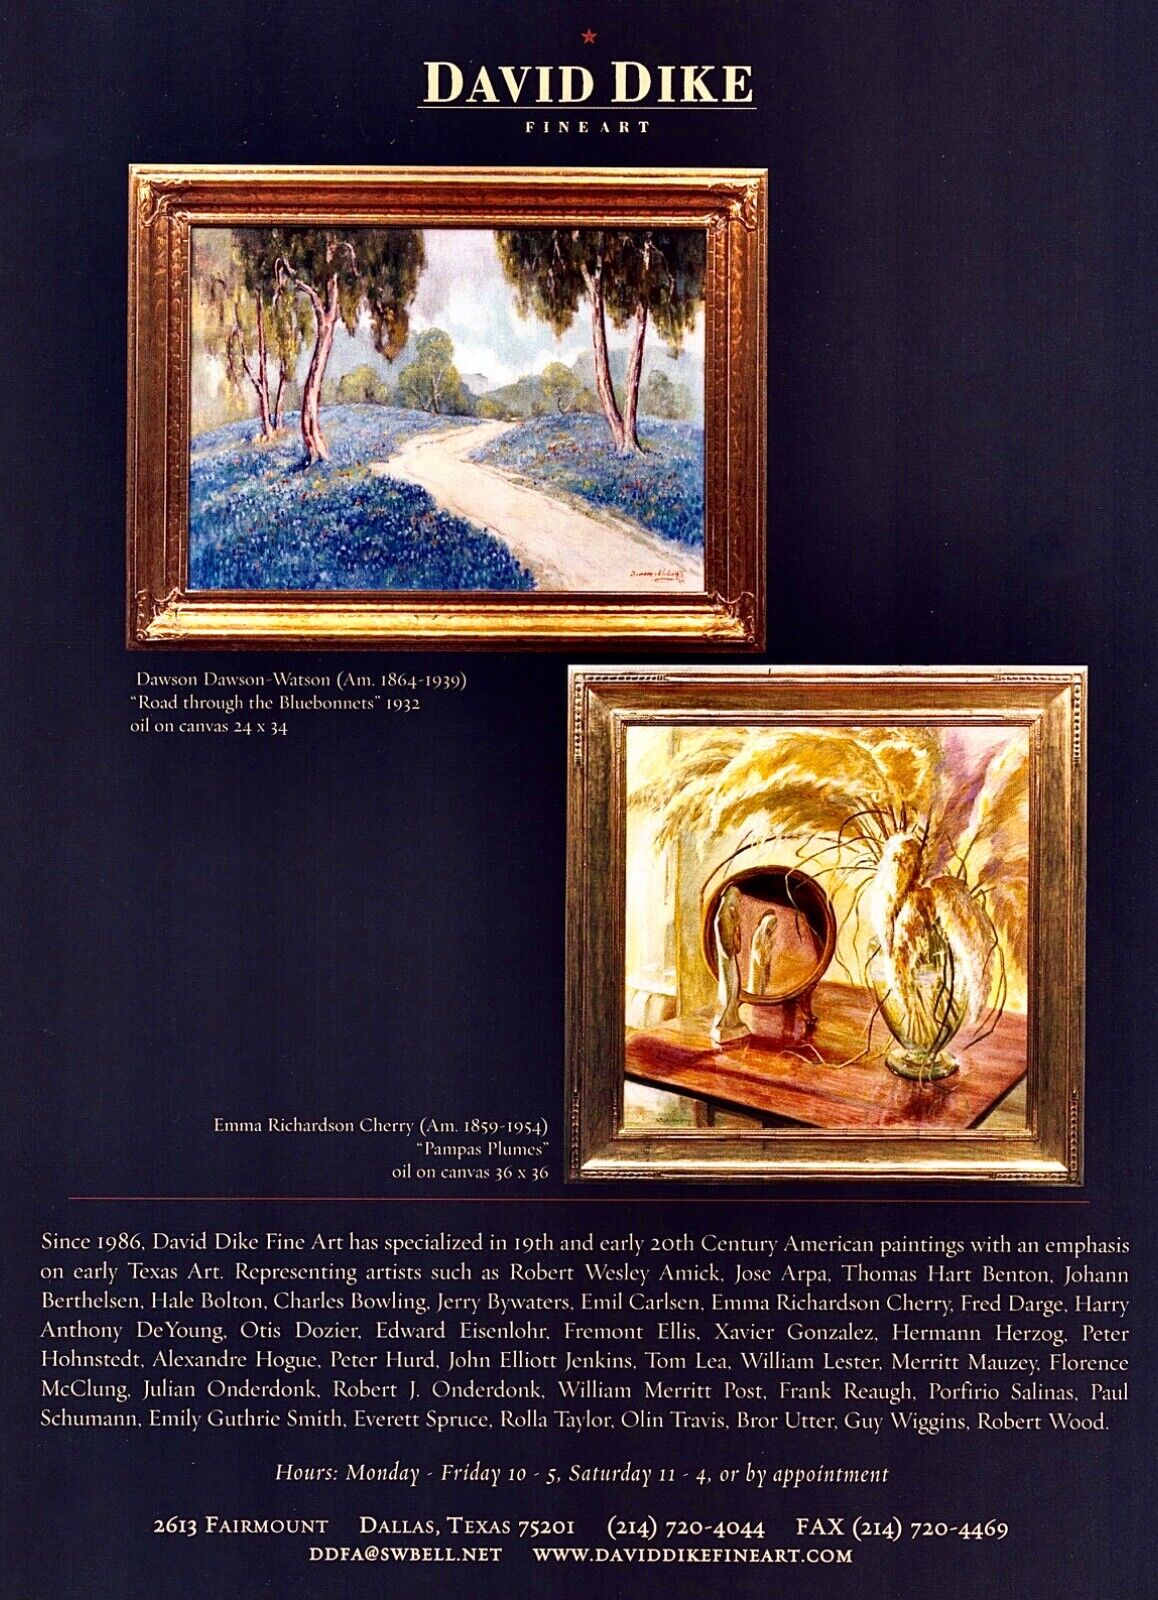 DAWSON DAWSON WATSON & EMMA RICHARDSON CHERRY Art Gallery ~ VTG PRINT AD ~ 2005